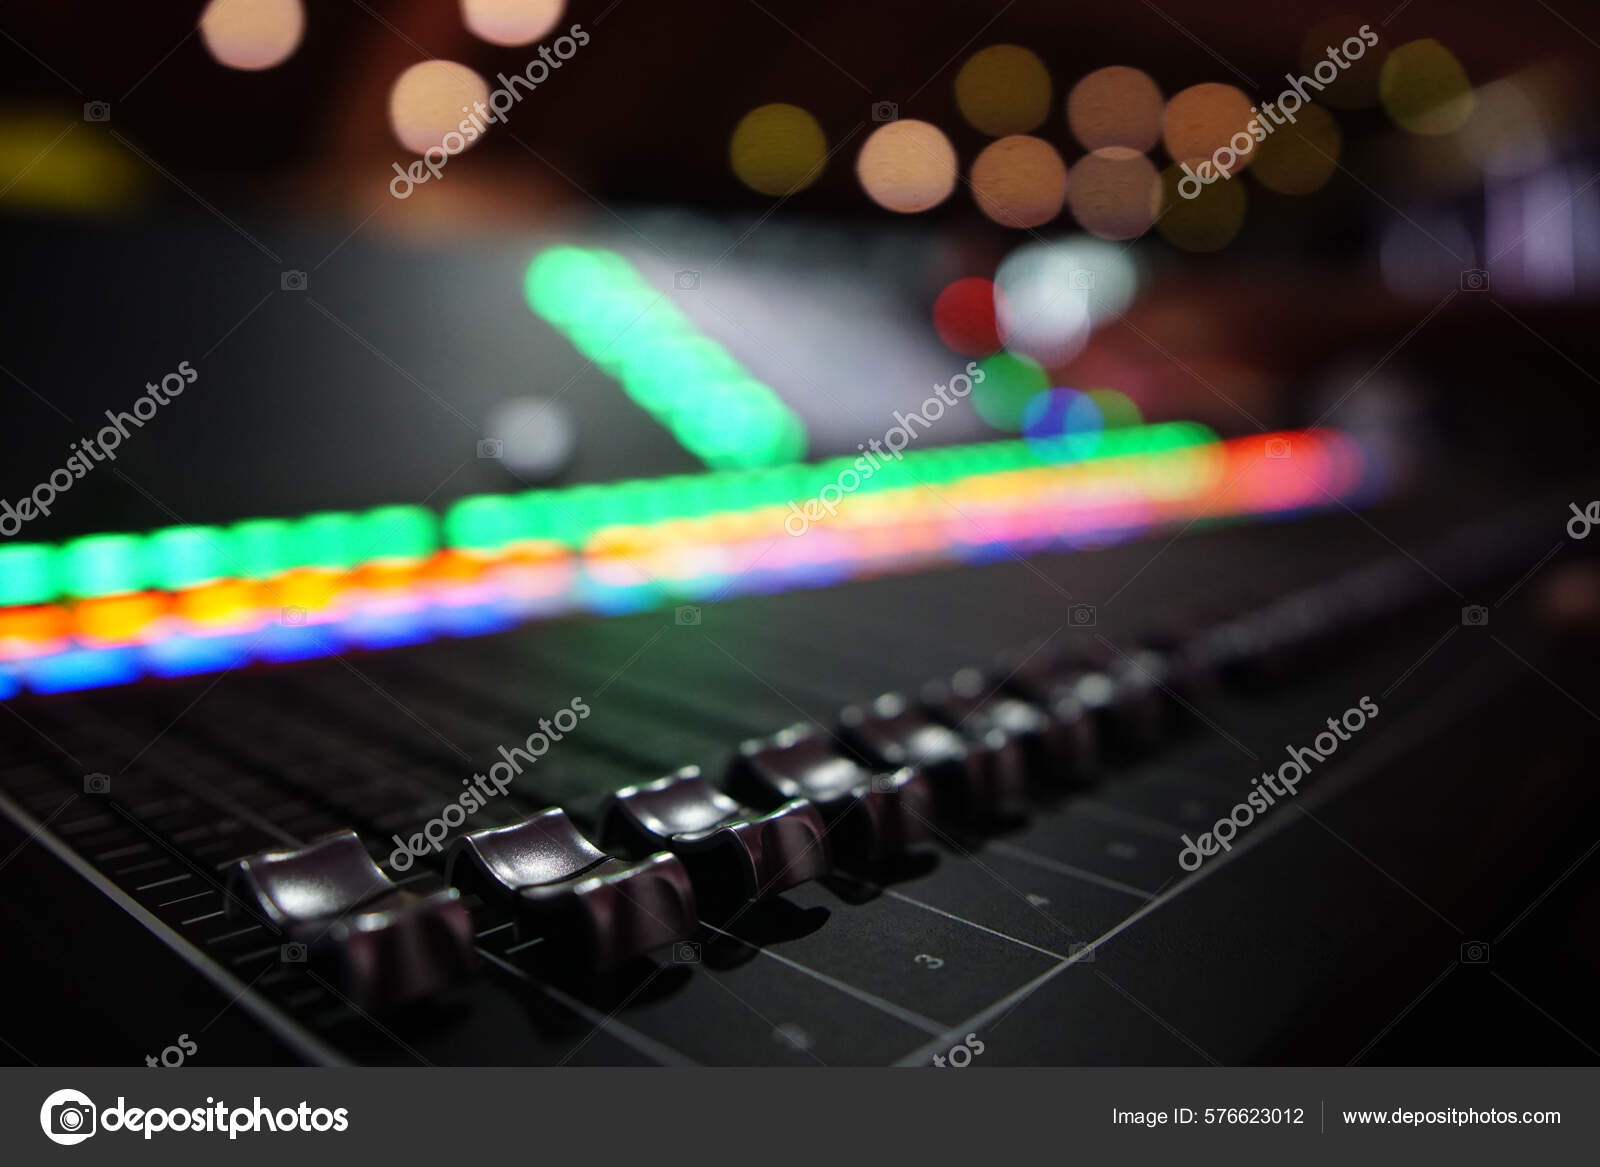 https://st.depositphotos.com/67903508/57662/i/1600/depositphotos_576623012-stock-photo-closeup-shot-audio-sound-mixer.jpg